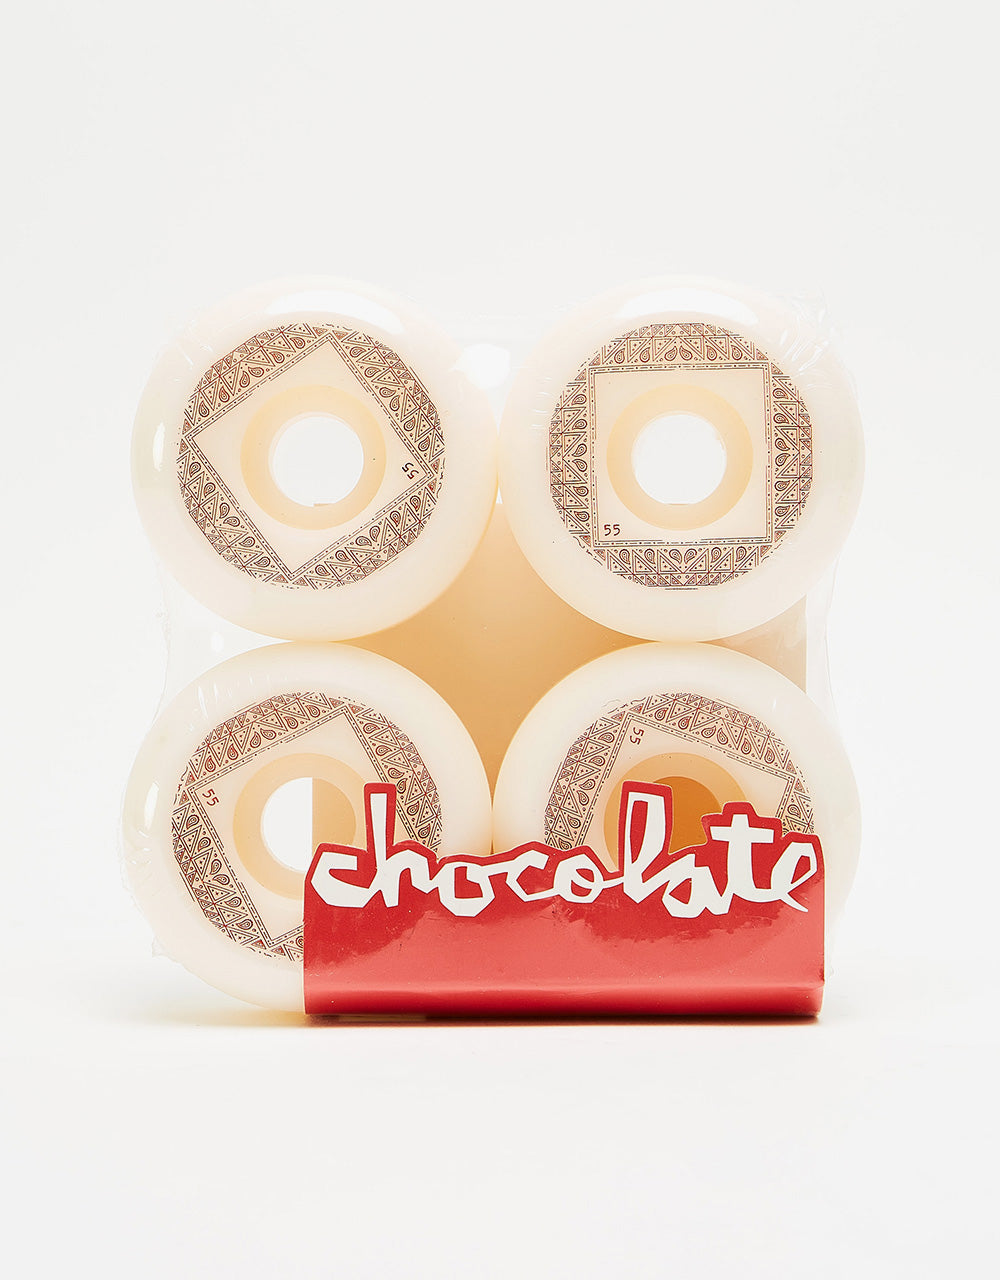 Chocolate Bandana Conical 99d Skateboard Wheel - 55mm